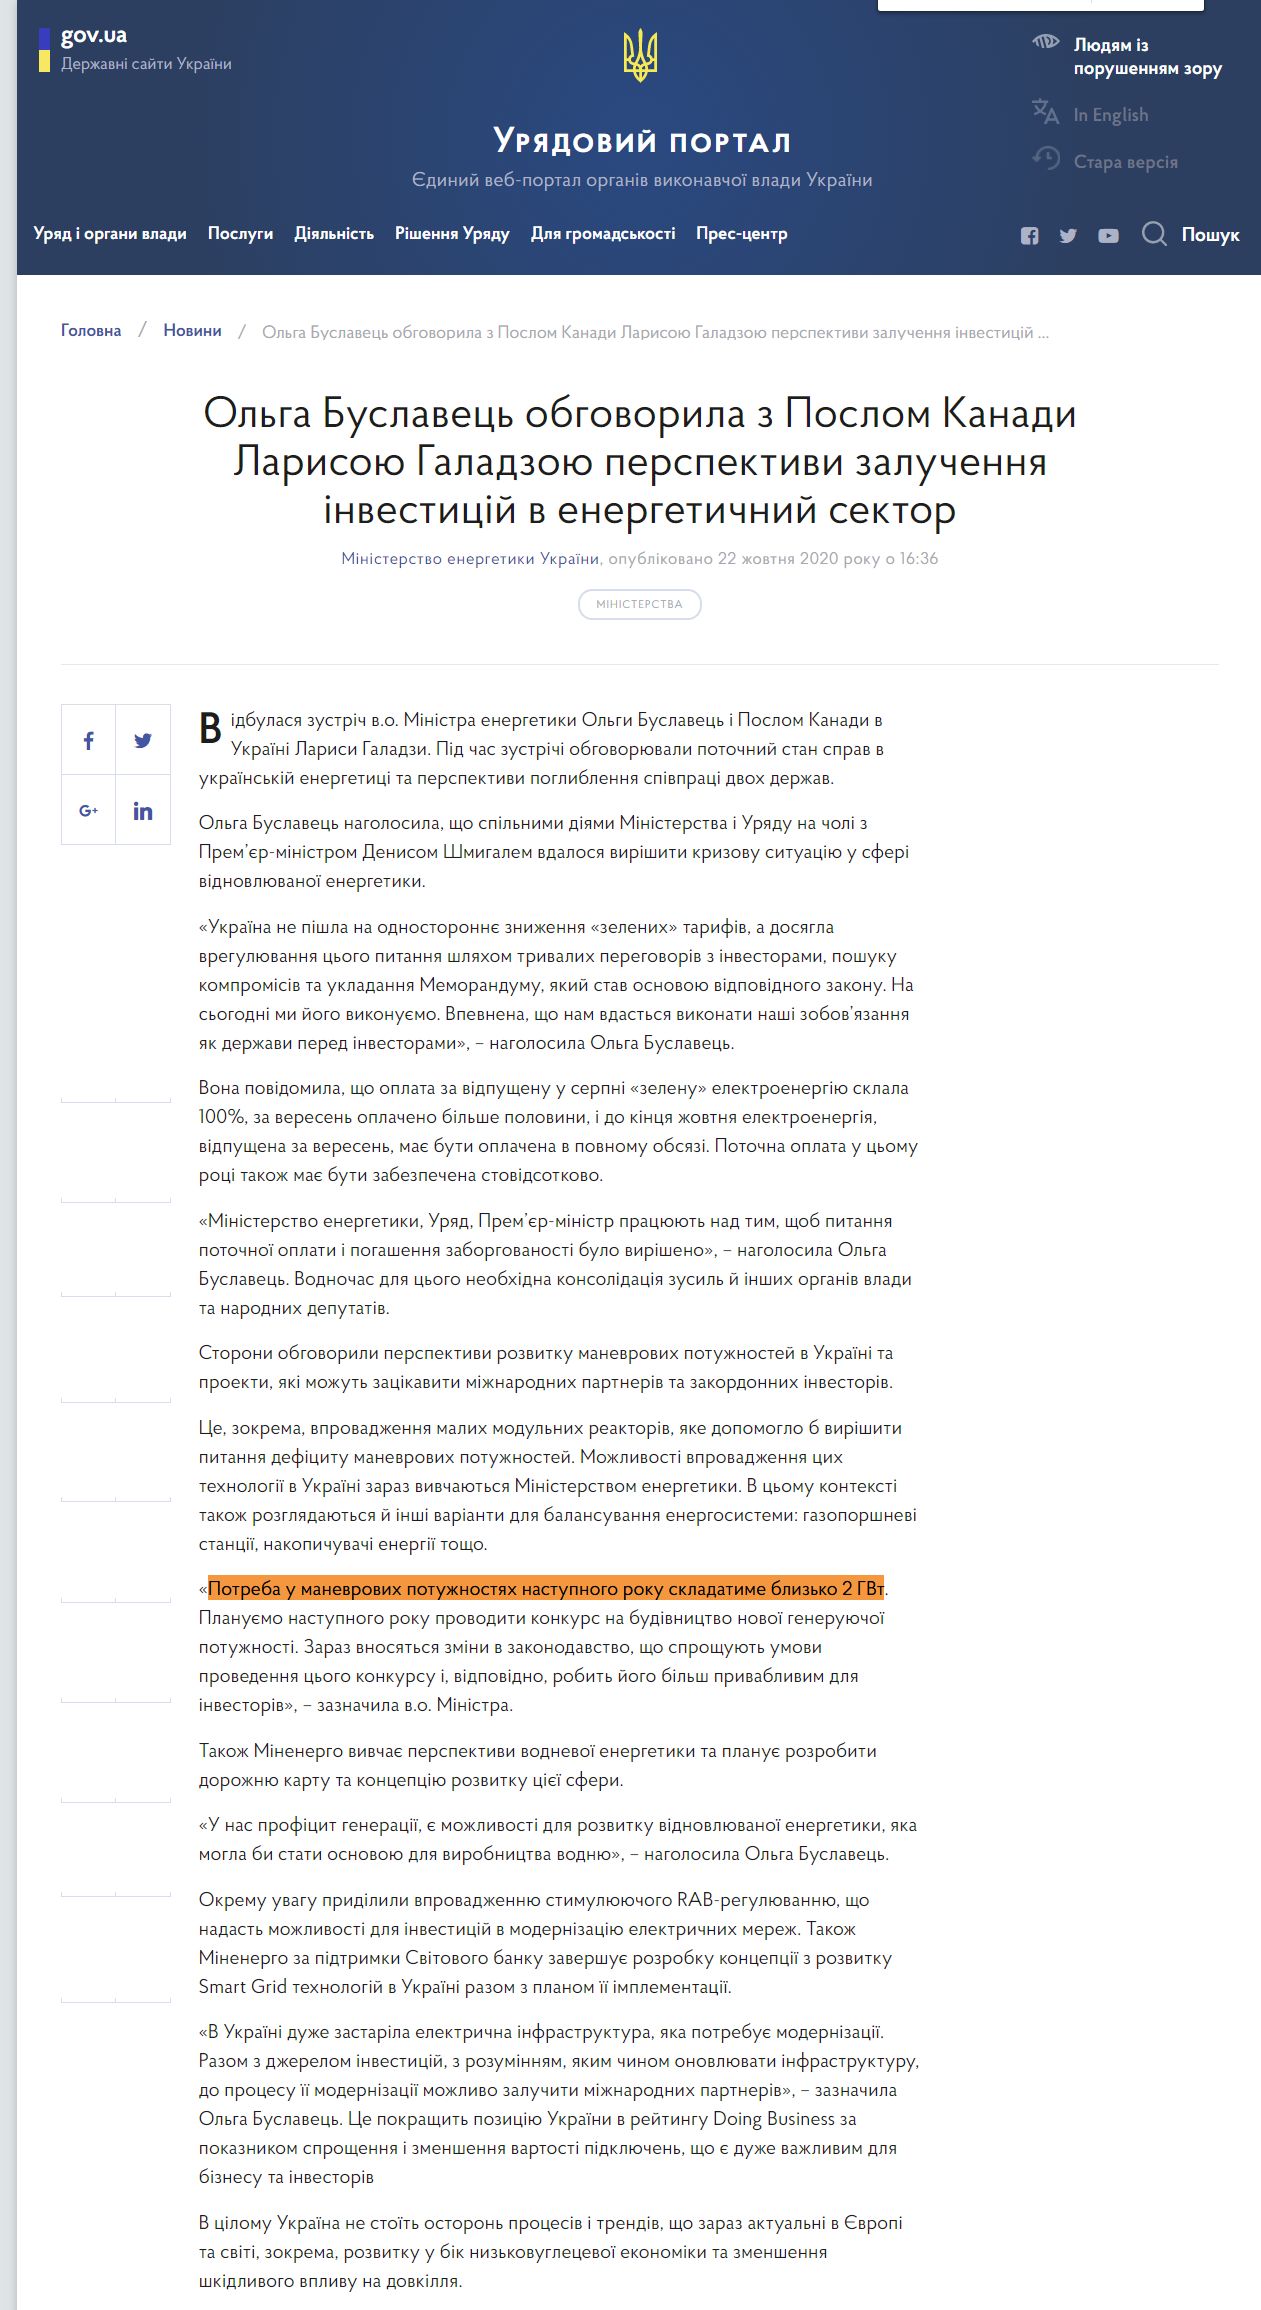 https://www.kmu.gov.ua/news/olga-buslavec-obgovorila-z-poslom-kanadi-larisoyu-galadzoyu-perspektivi-zaluchennya-investicij-v-energetichnij-sektor